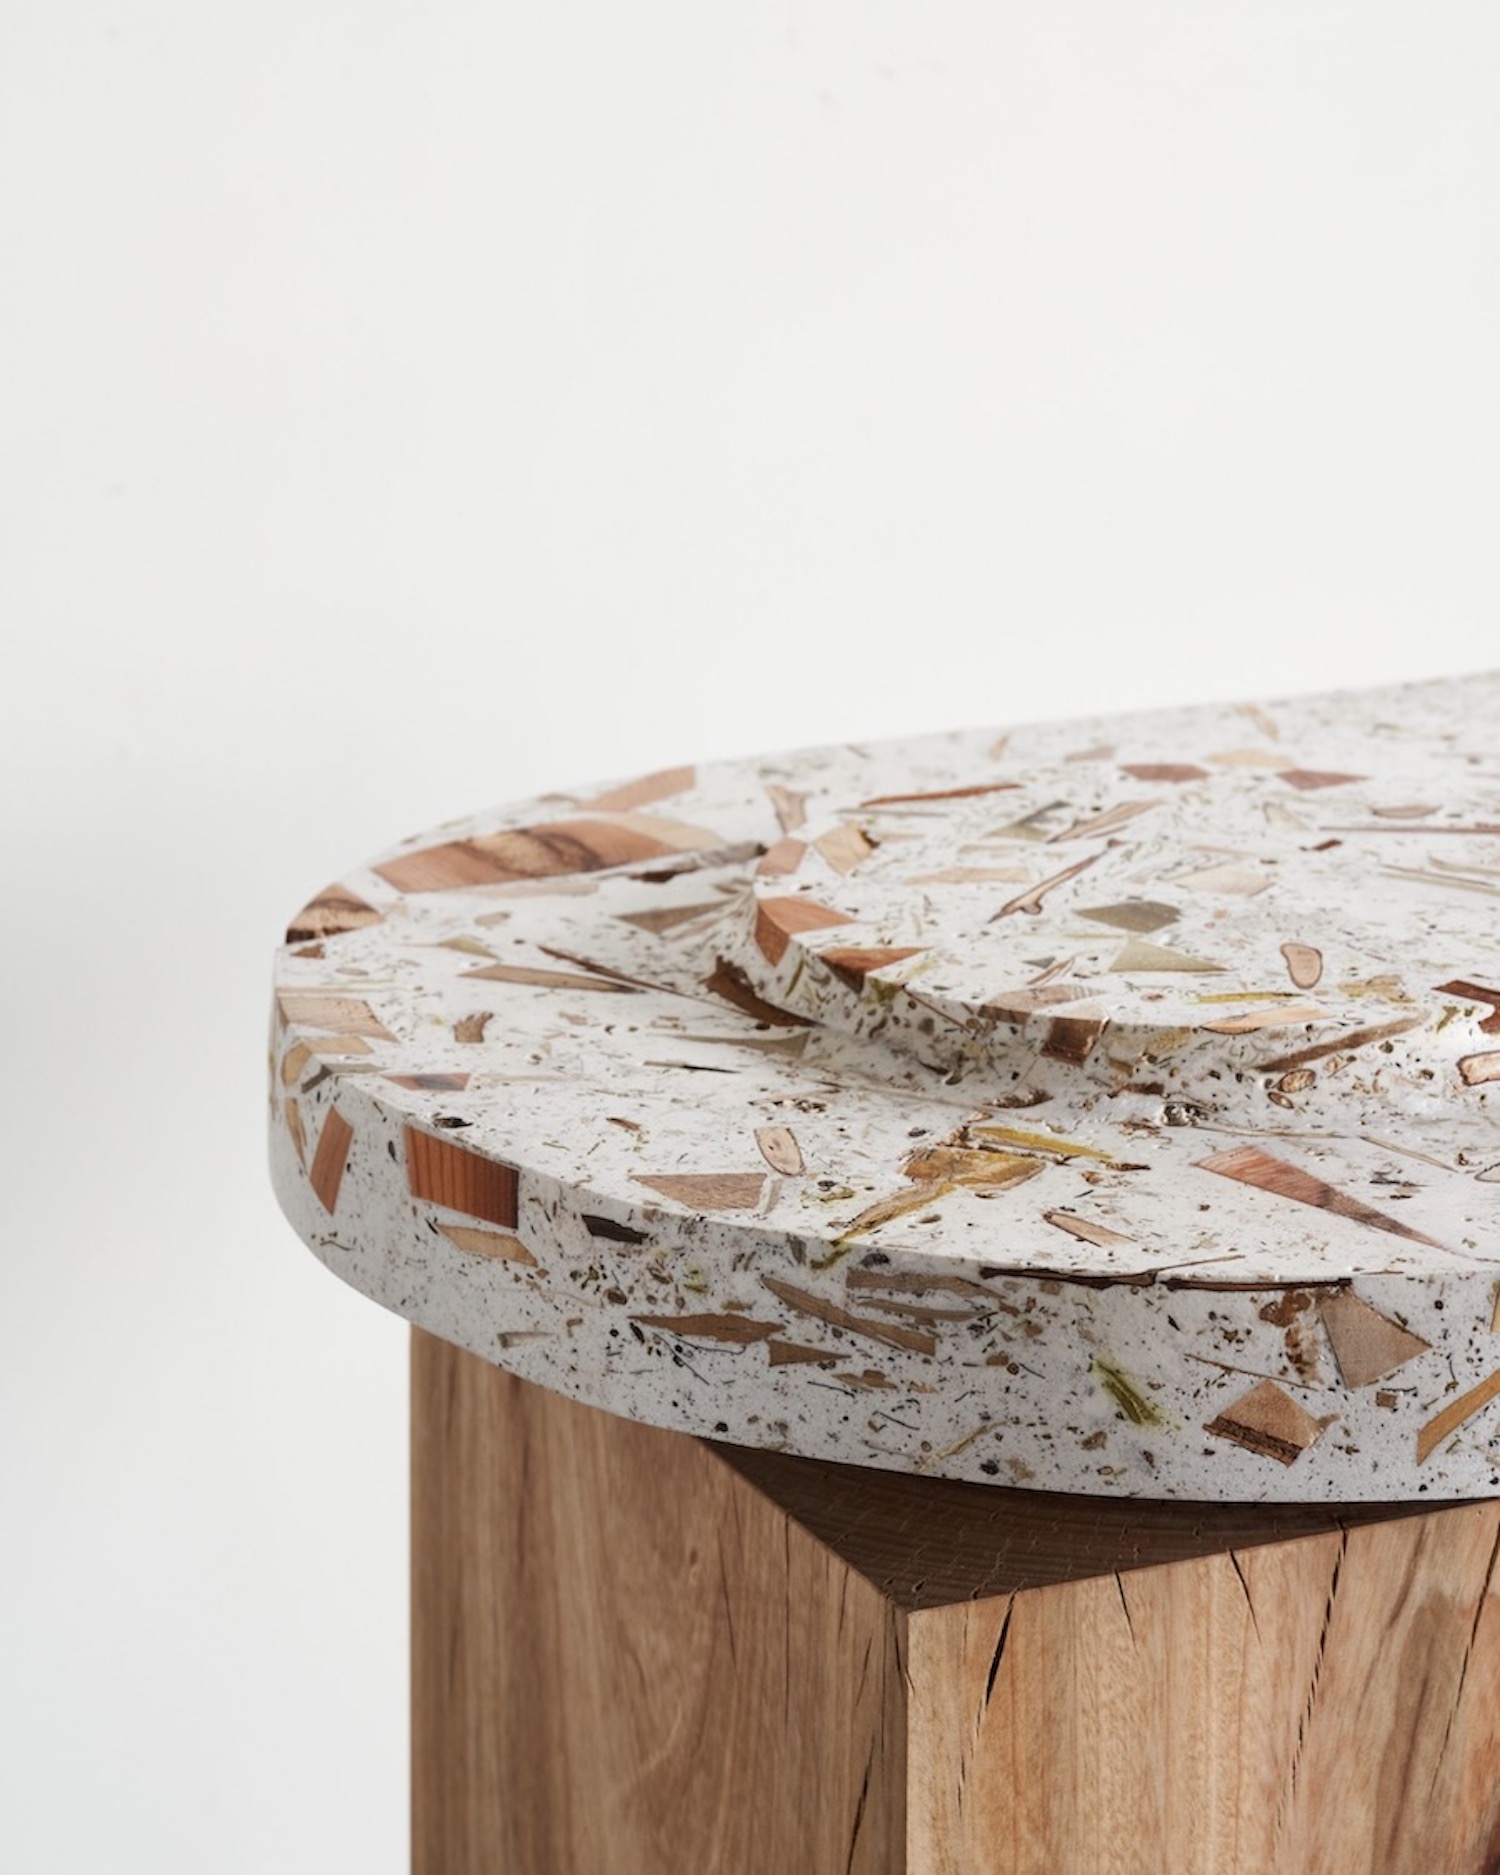 Forestbank, nouveau type de bois fabriqué à partir de débris d'arbres